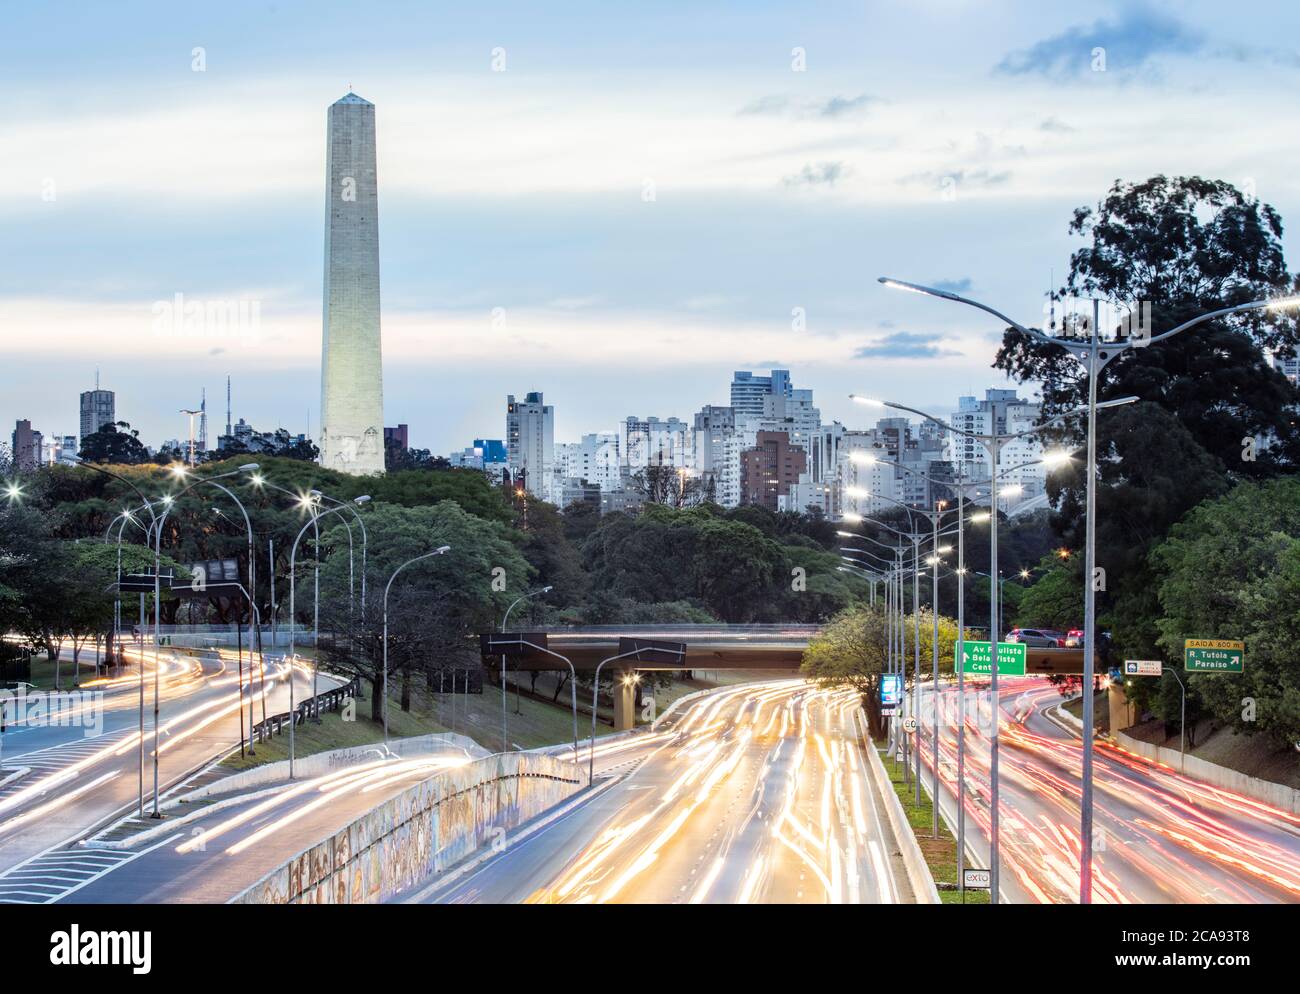 Rush Hour Ampelwege auf 23 de Maio Avenue, die Skyline und der Obelisk der Helden in Ibirapuera Park, Sao Paulo, Brasilien, Südamerika Stockfoto